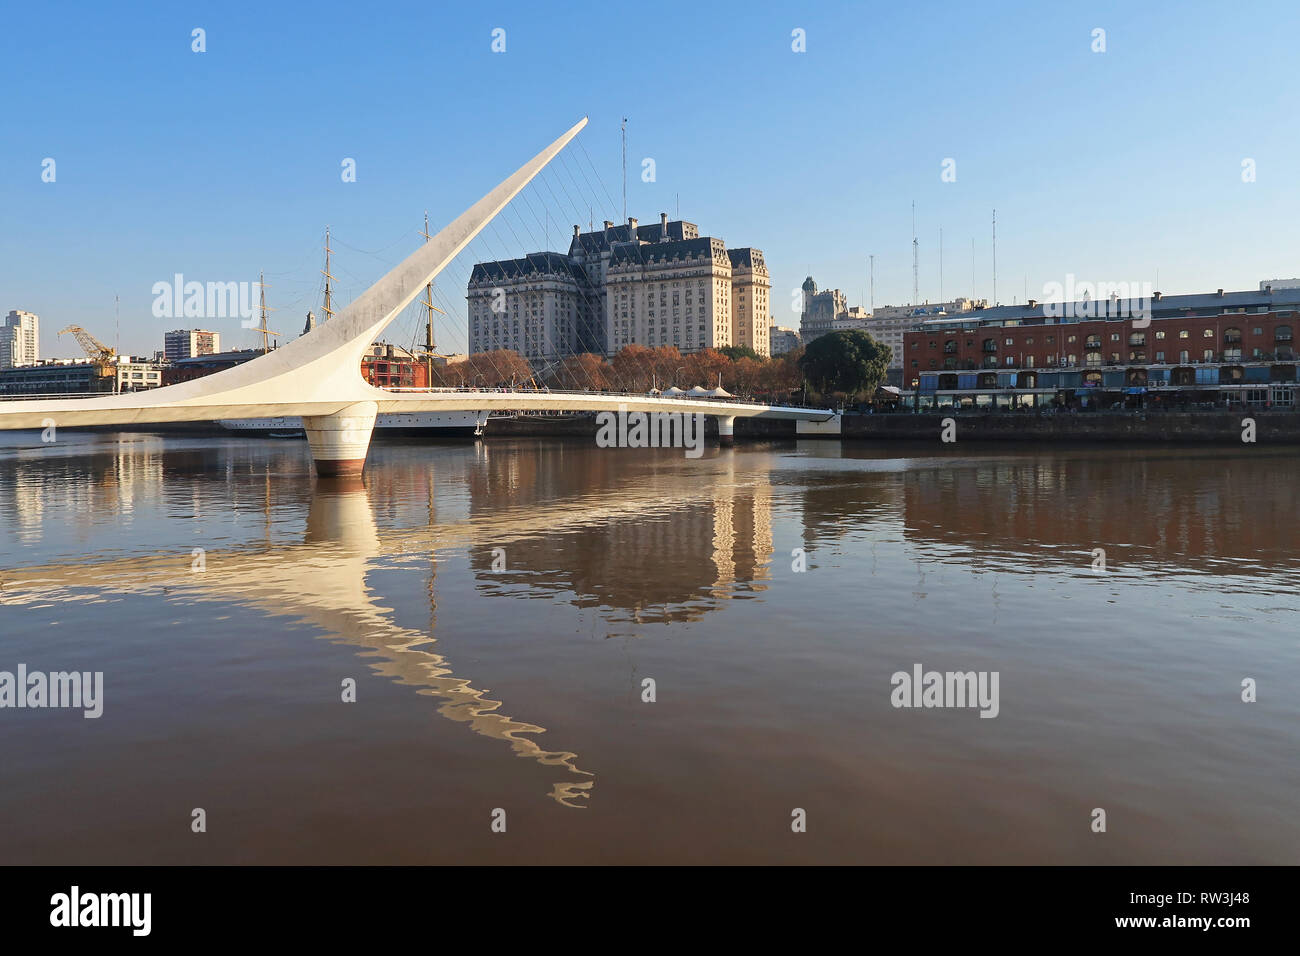 Puente de La Mujer, Spanisch für die Frau, die Brücke über den Rio de la Plata, ein Fluss, Puerto Madero, Buenos Aires, Argentinien Stockfoto